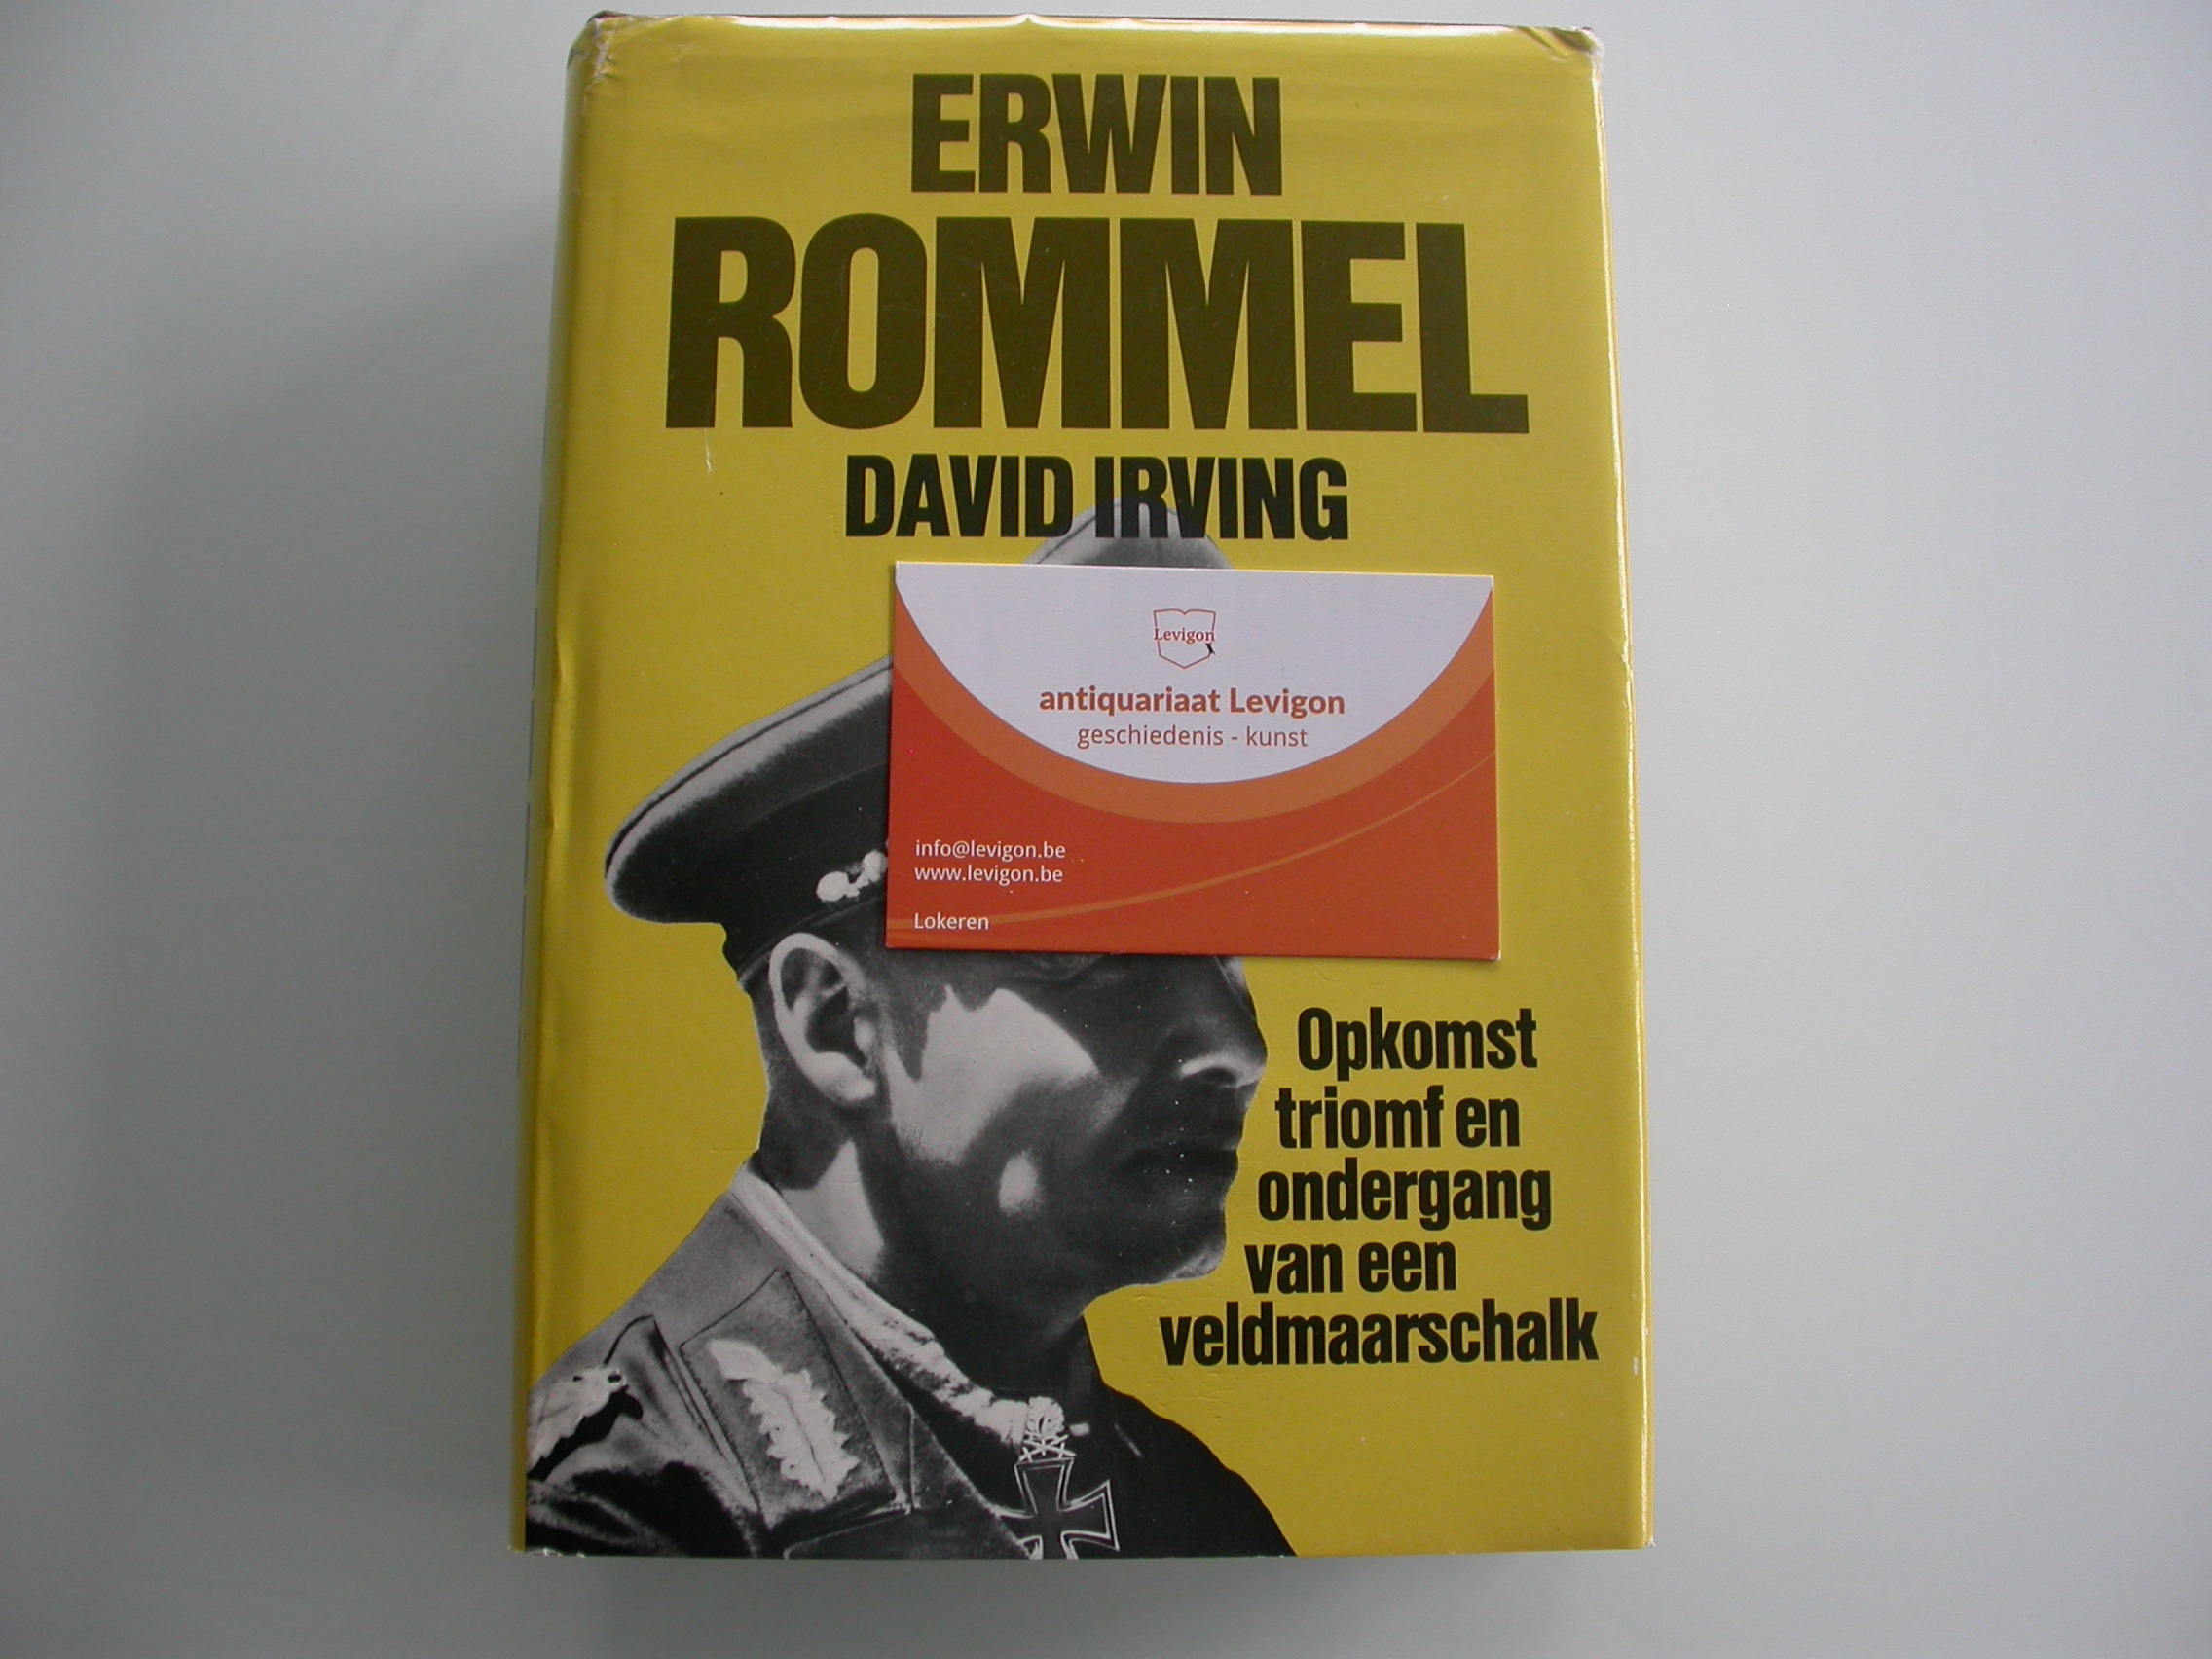 Irving Erwin Rommel Opkomst triomf en ondergang van een veldmaarschalk